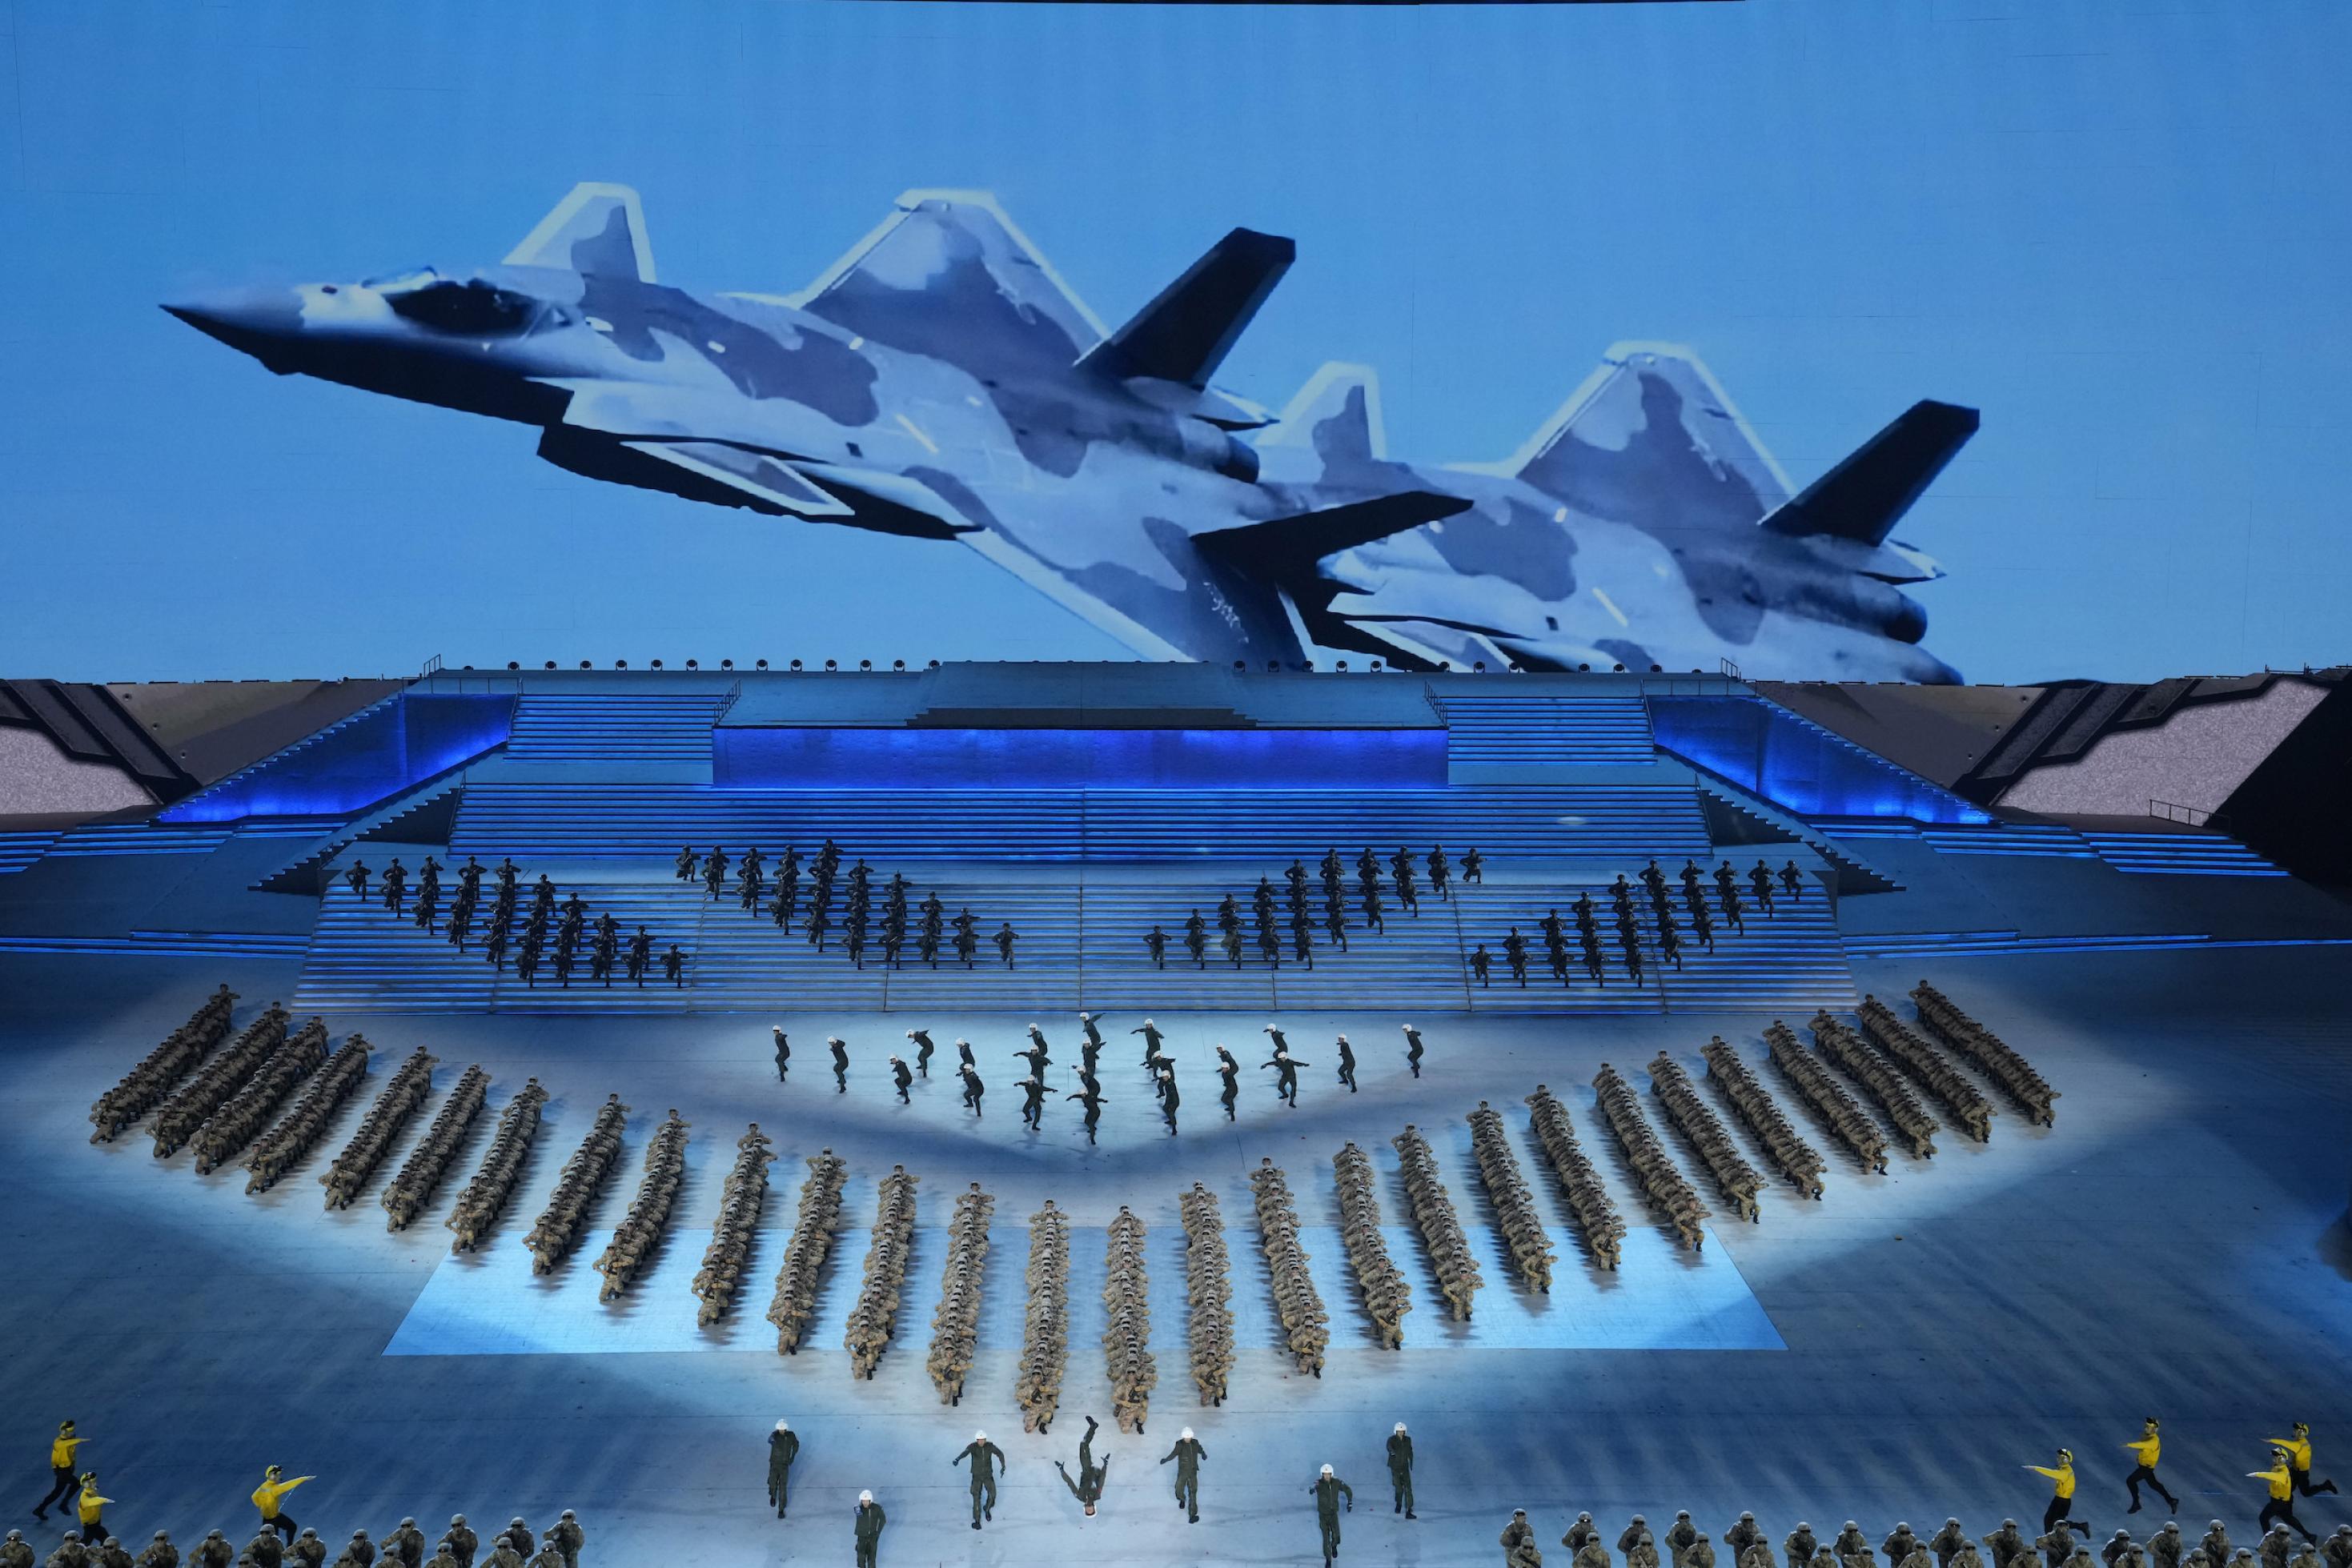 Eine große Bühne in Blau mit Soldaten, die eine Aufführung bieten, an der Rückseite das Bild eines Kampfjets